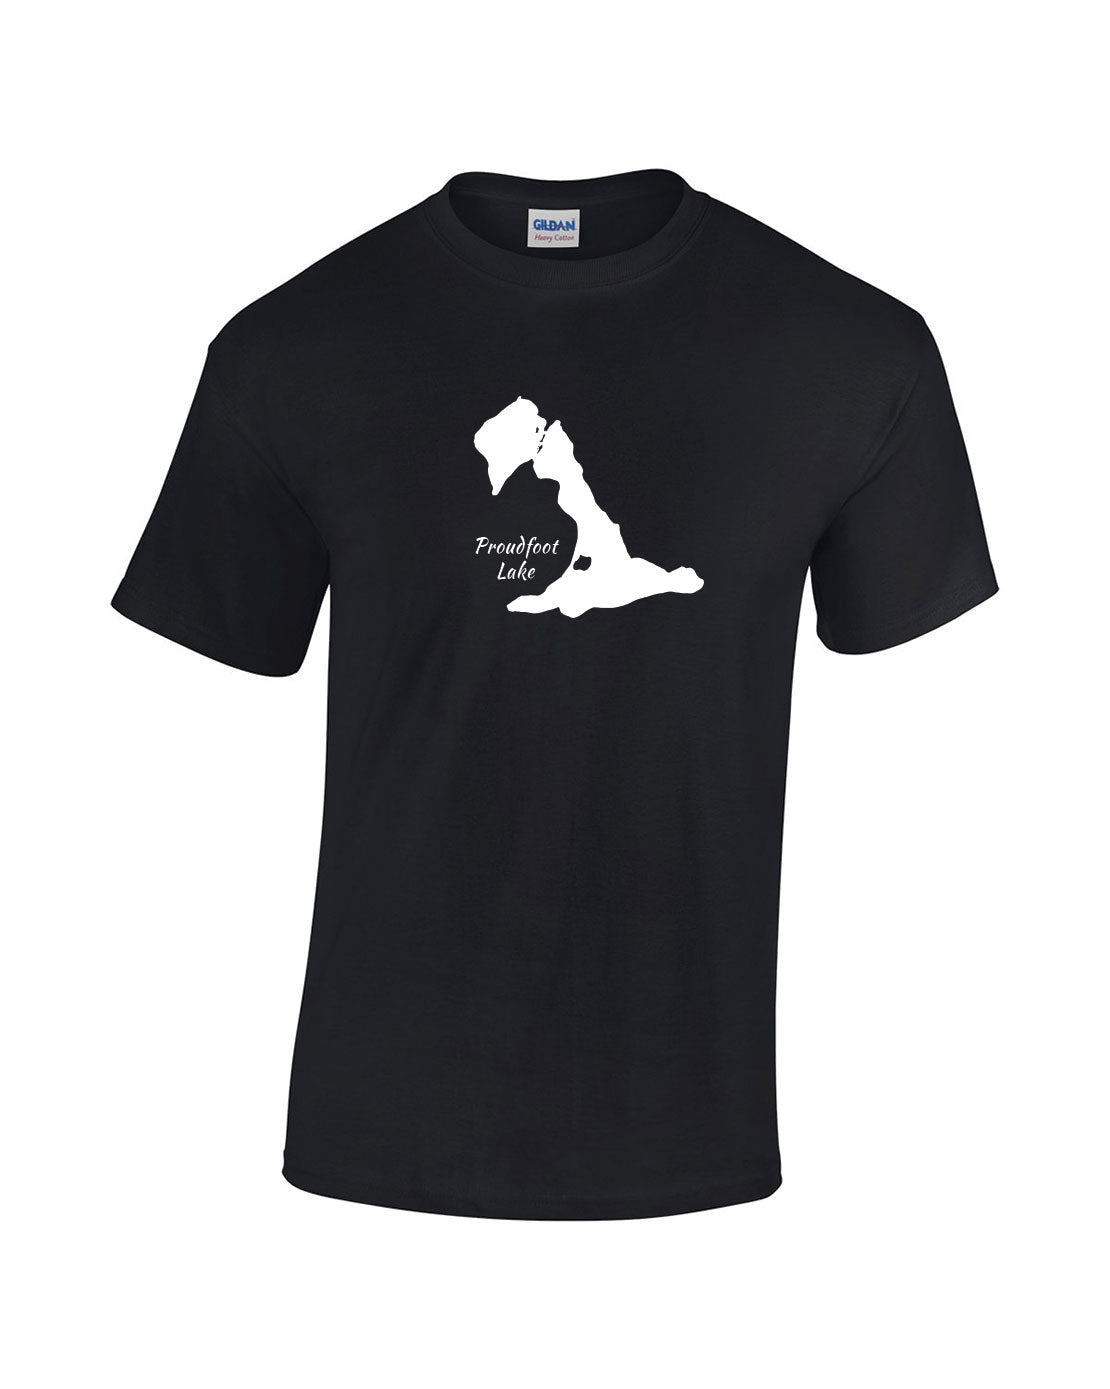 Proudfoot Lake T-Shirt